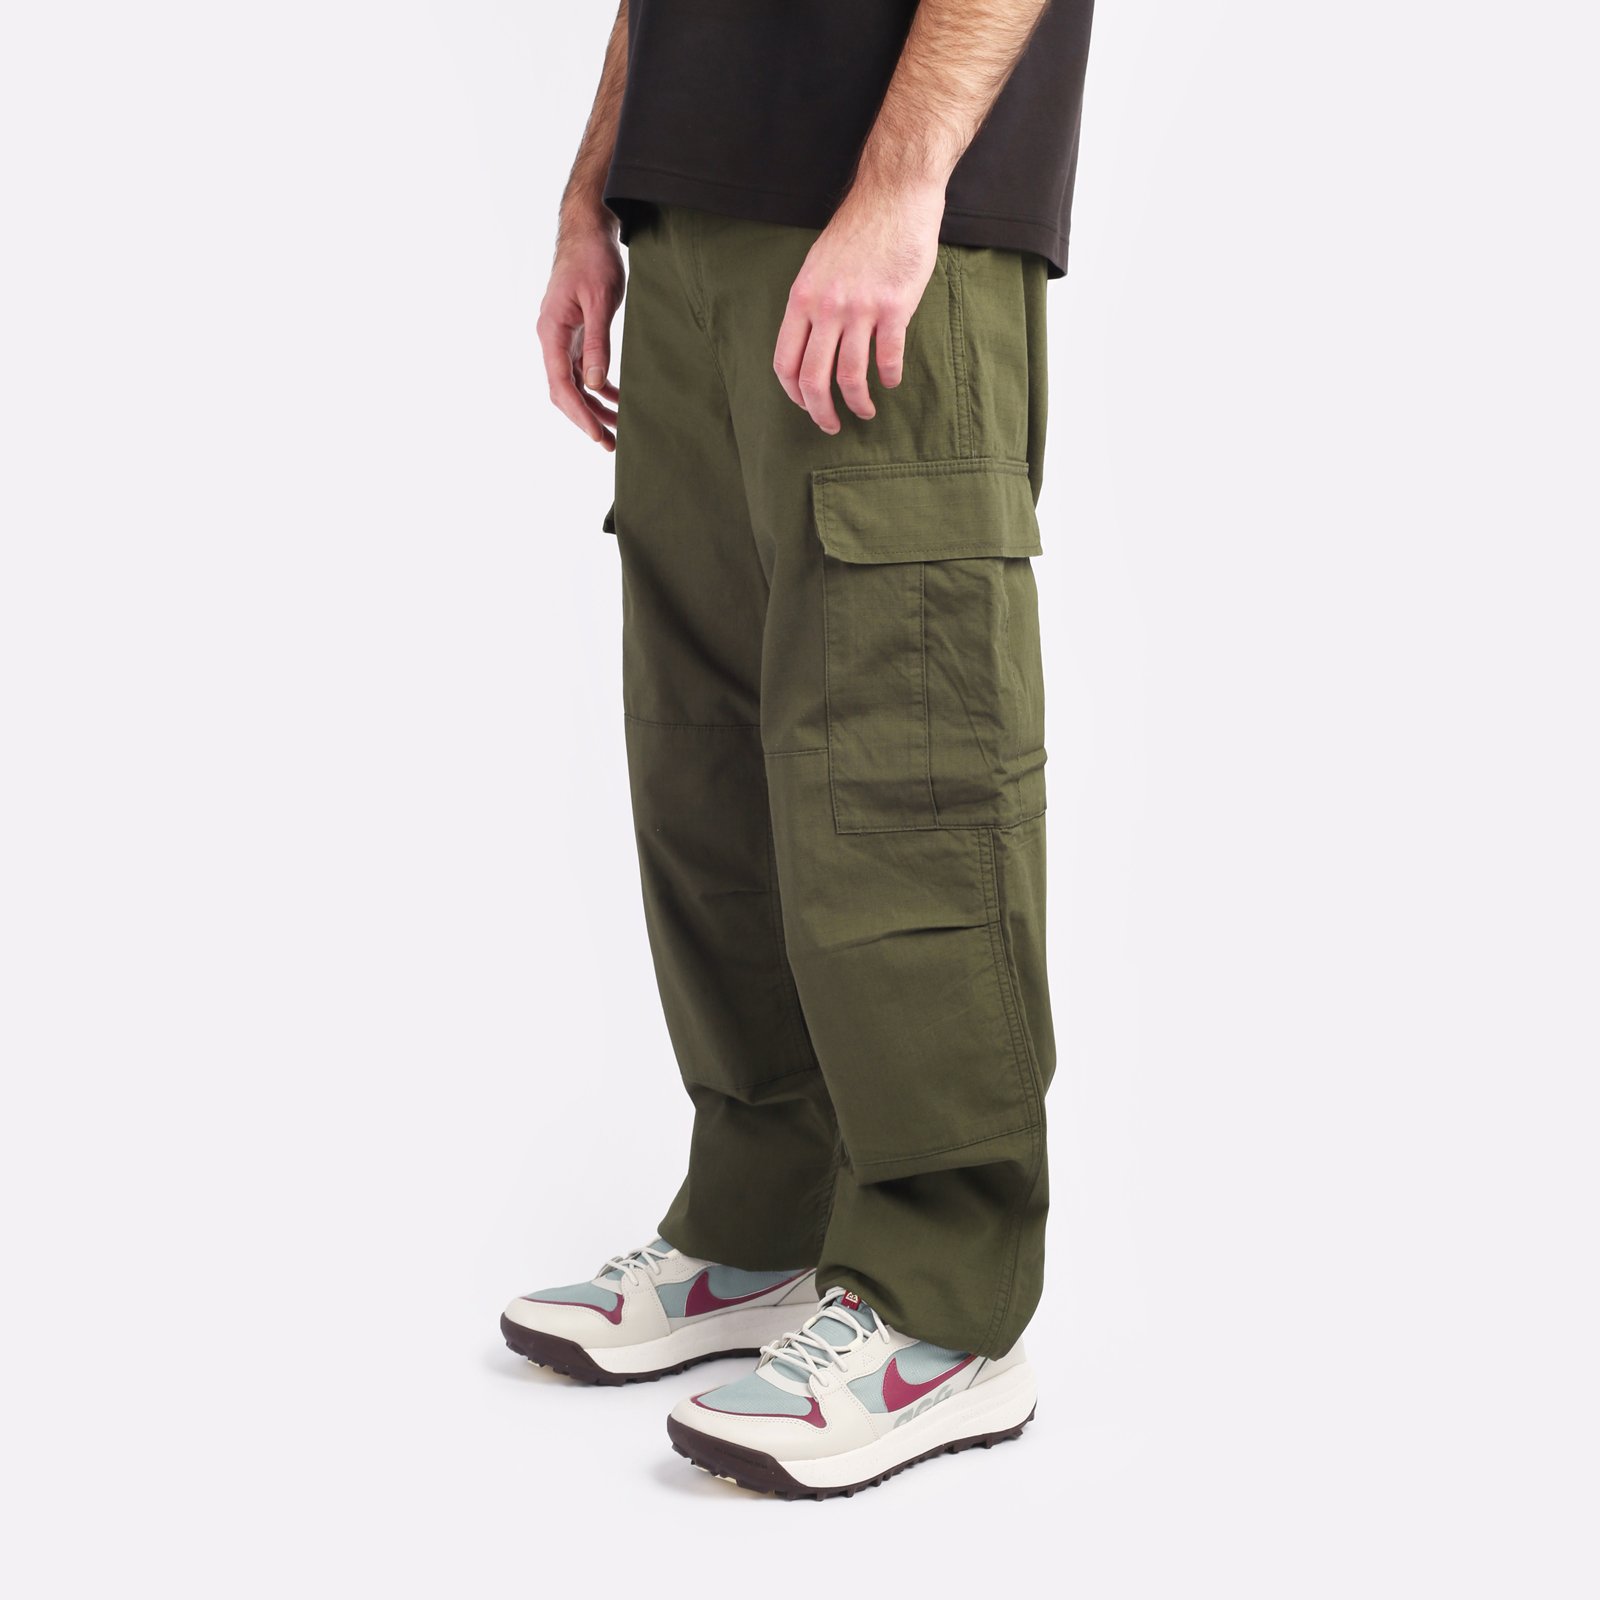 мужские брюки Carhartt WIP Regular Cargo Pant  (I032467-cypress)  - цена, описание, фото 3